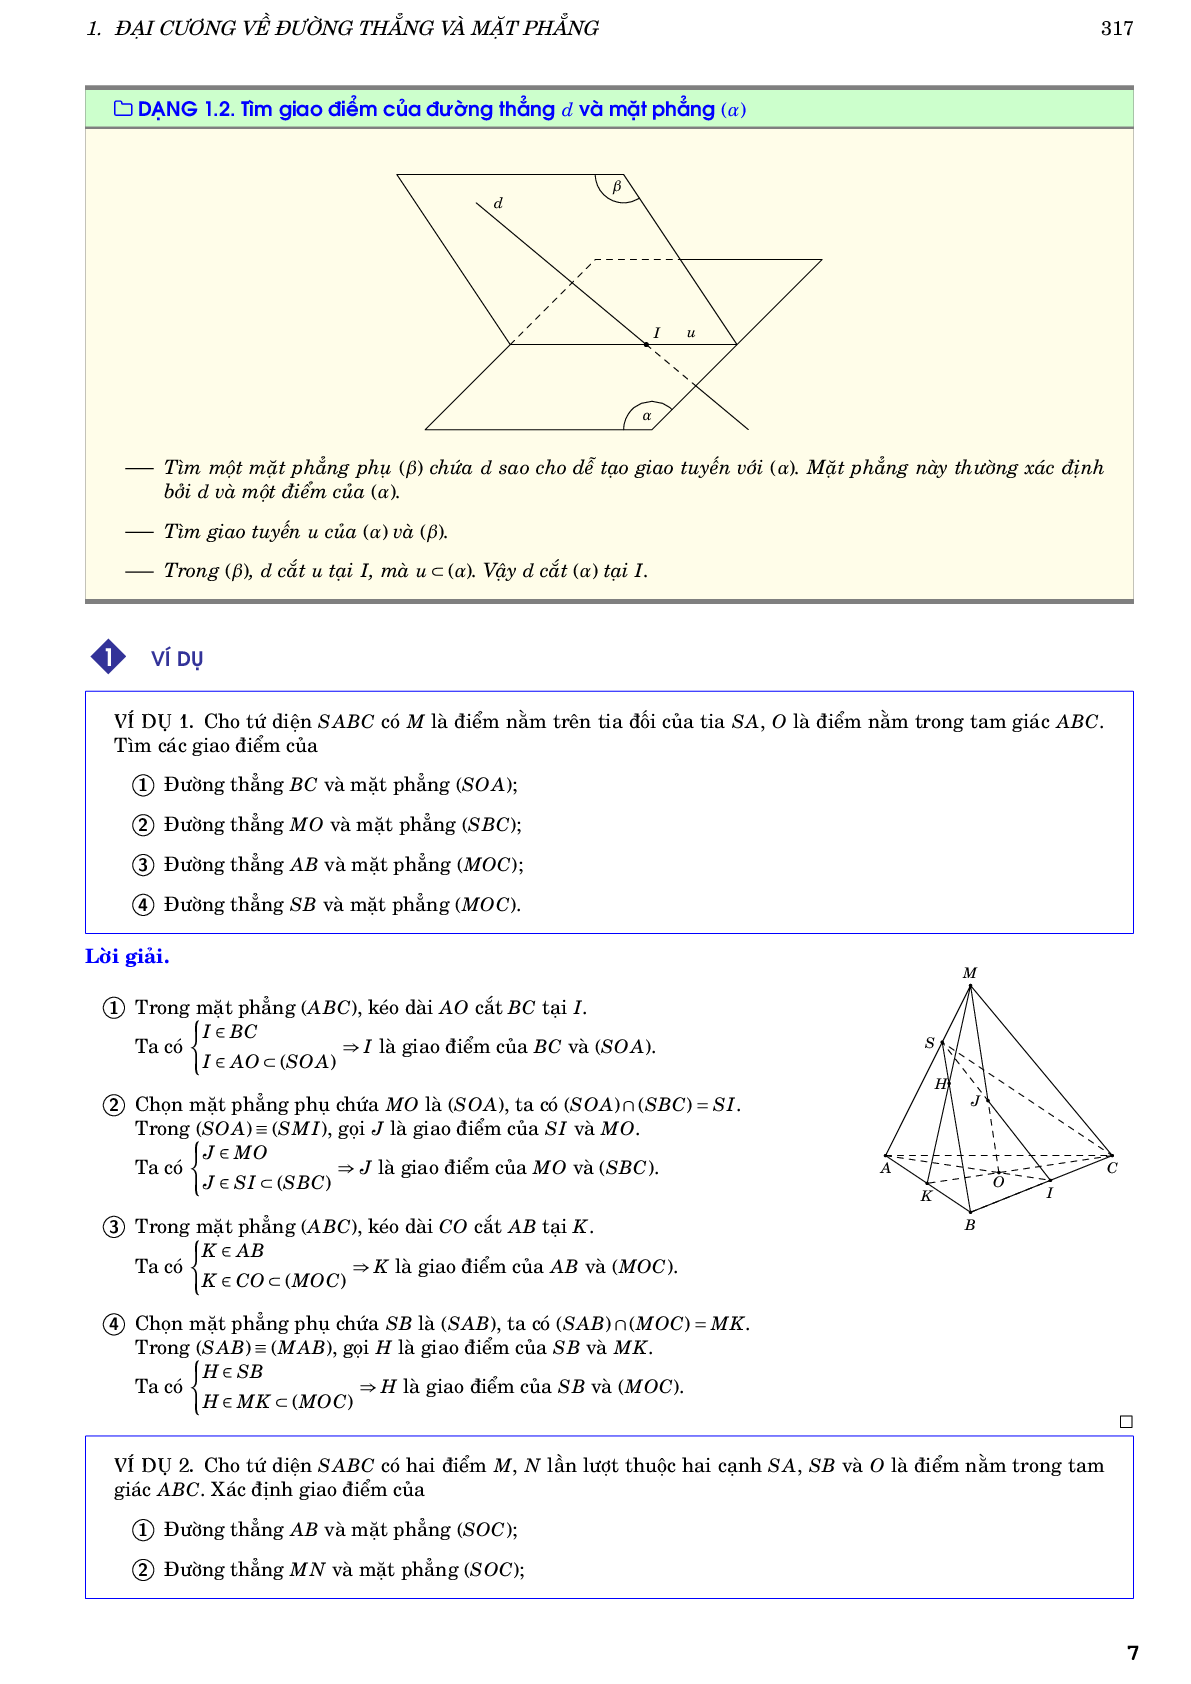 Hướng dẫn giải các dạng toán đường thẳng và mặt phẳng trong không gian quan hệ song song (trang 7)